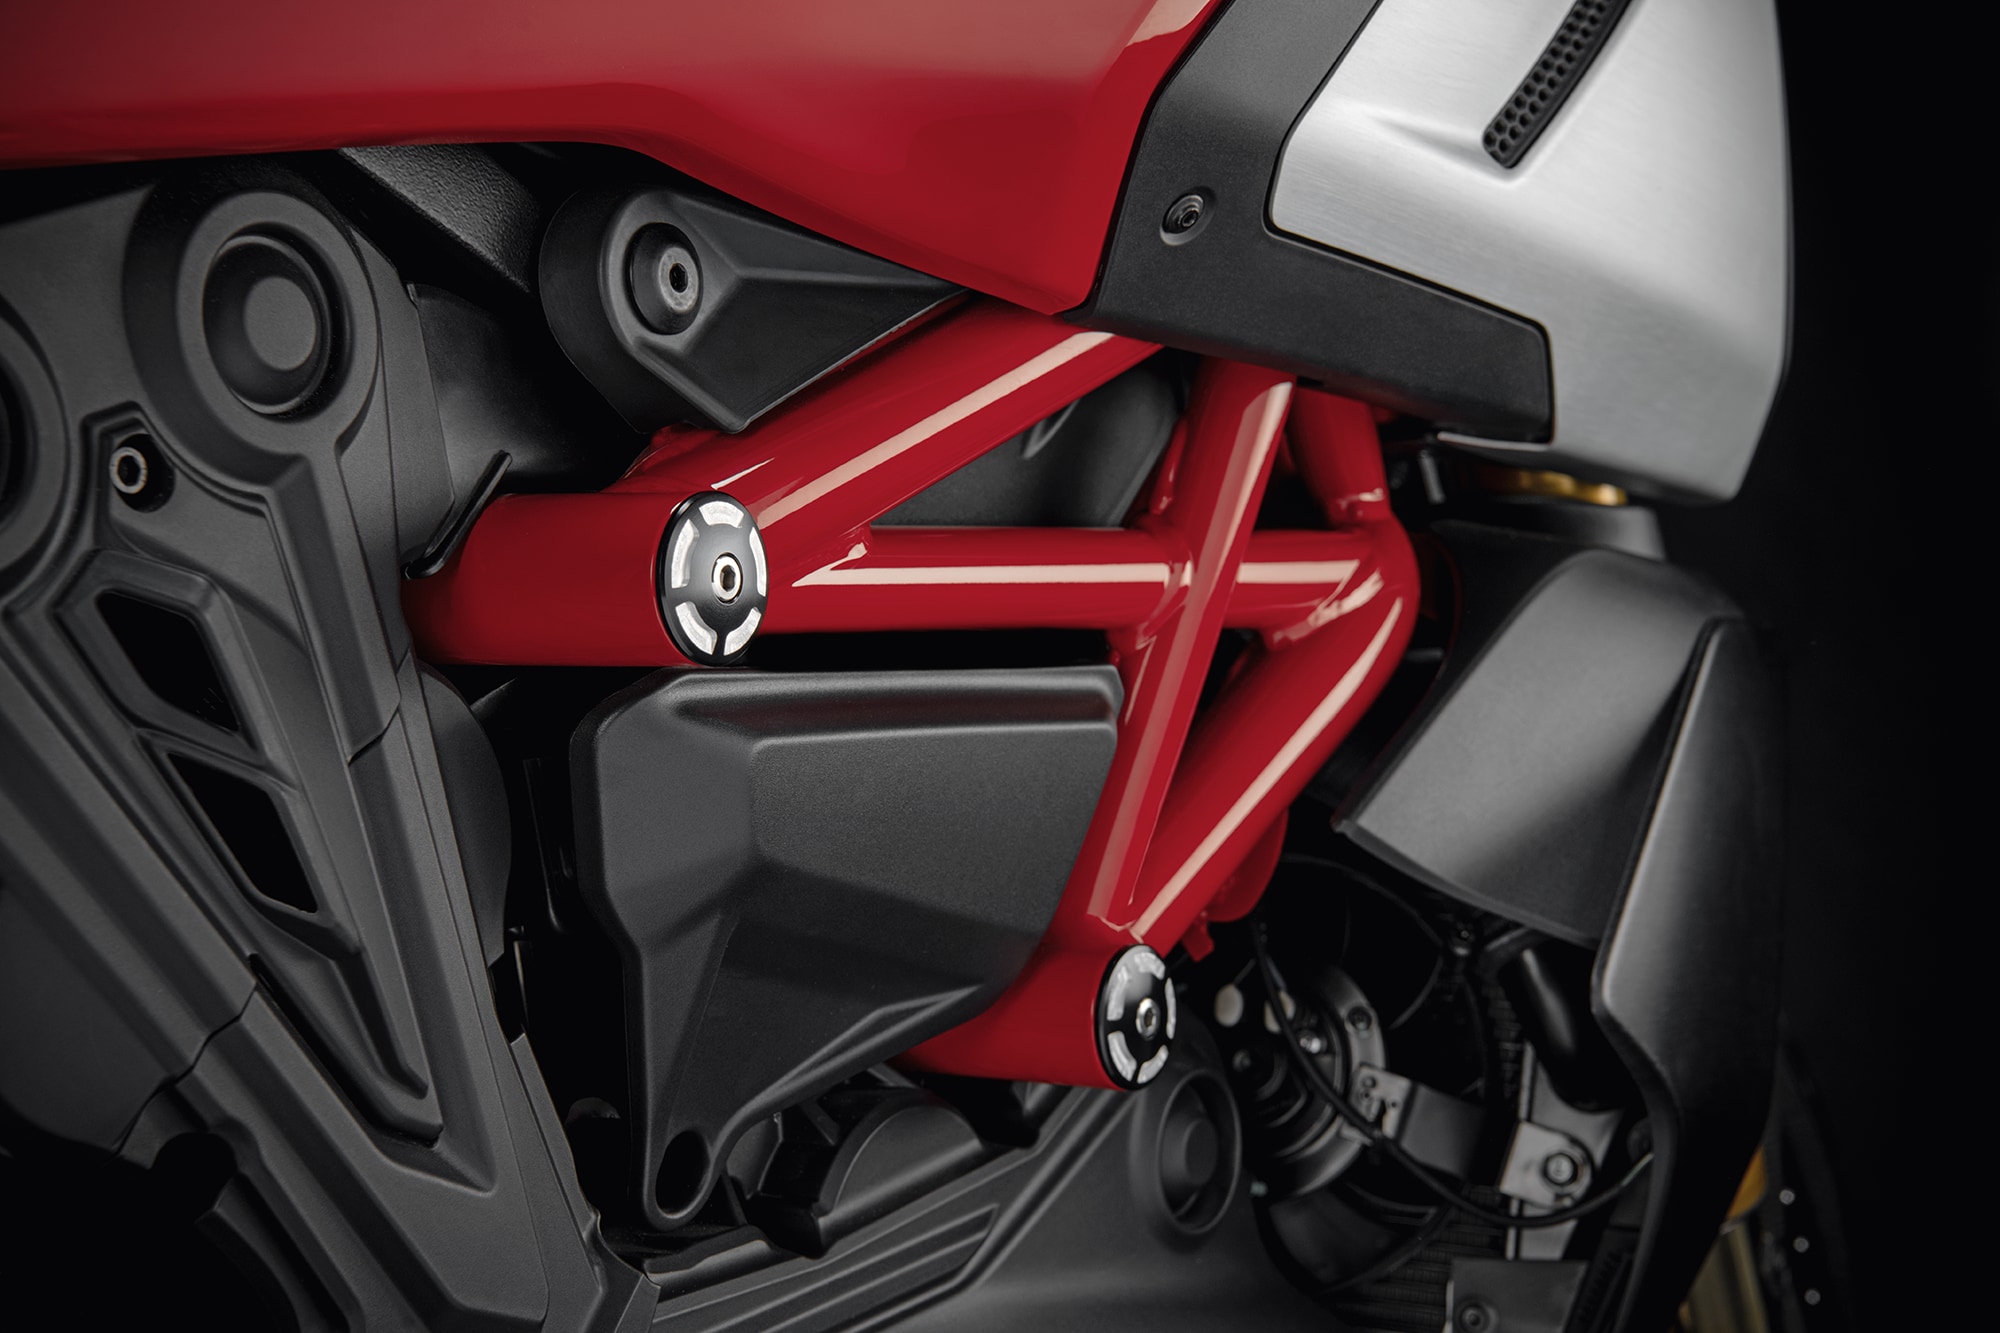 Ducati Billet aluminium frame plugs